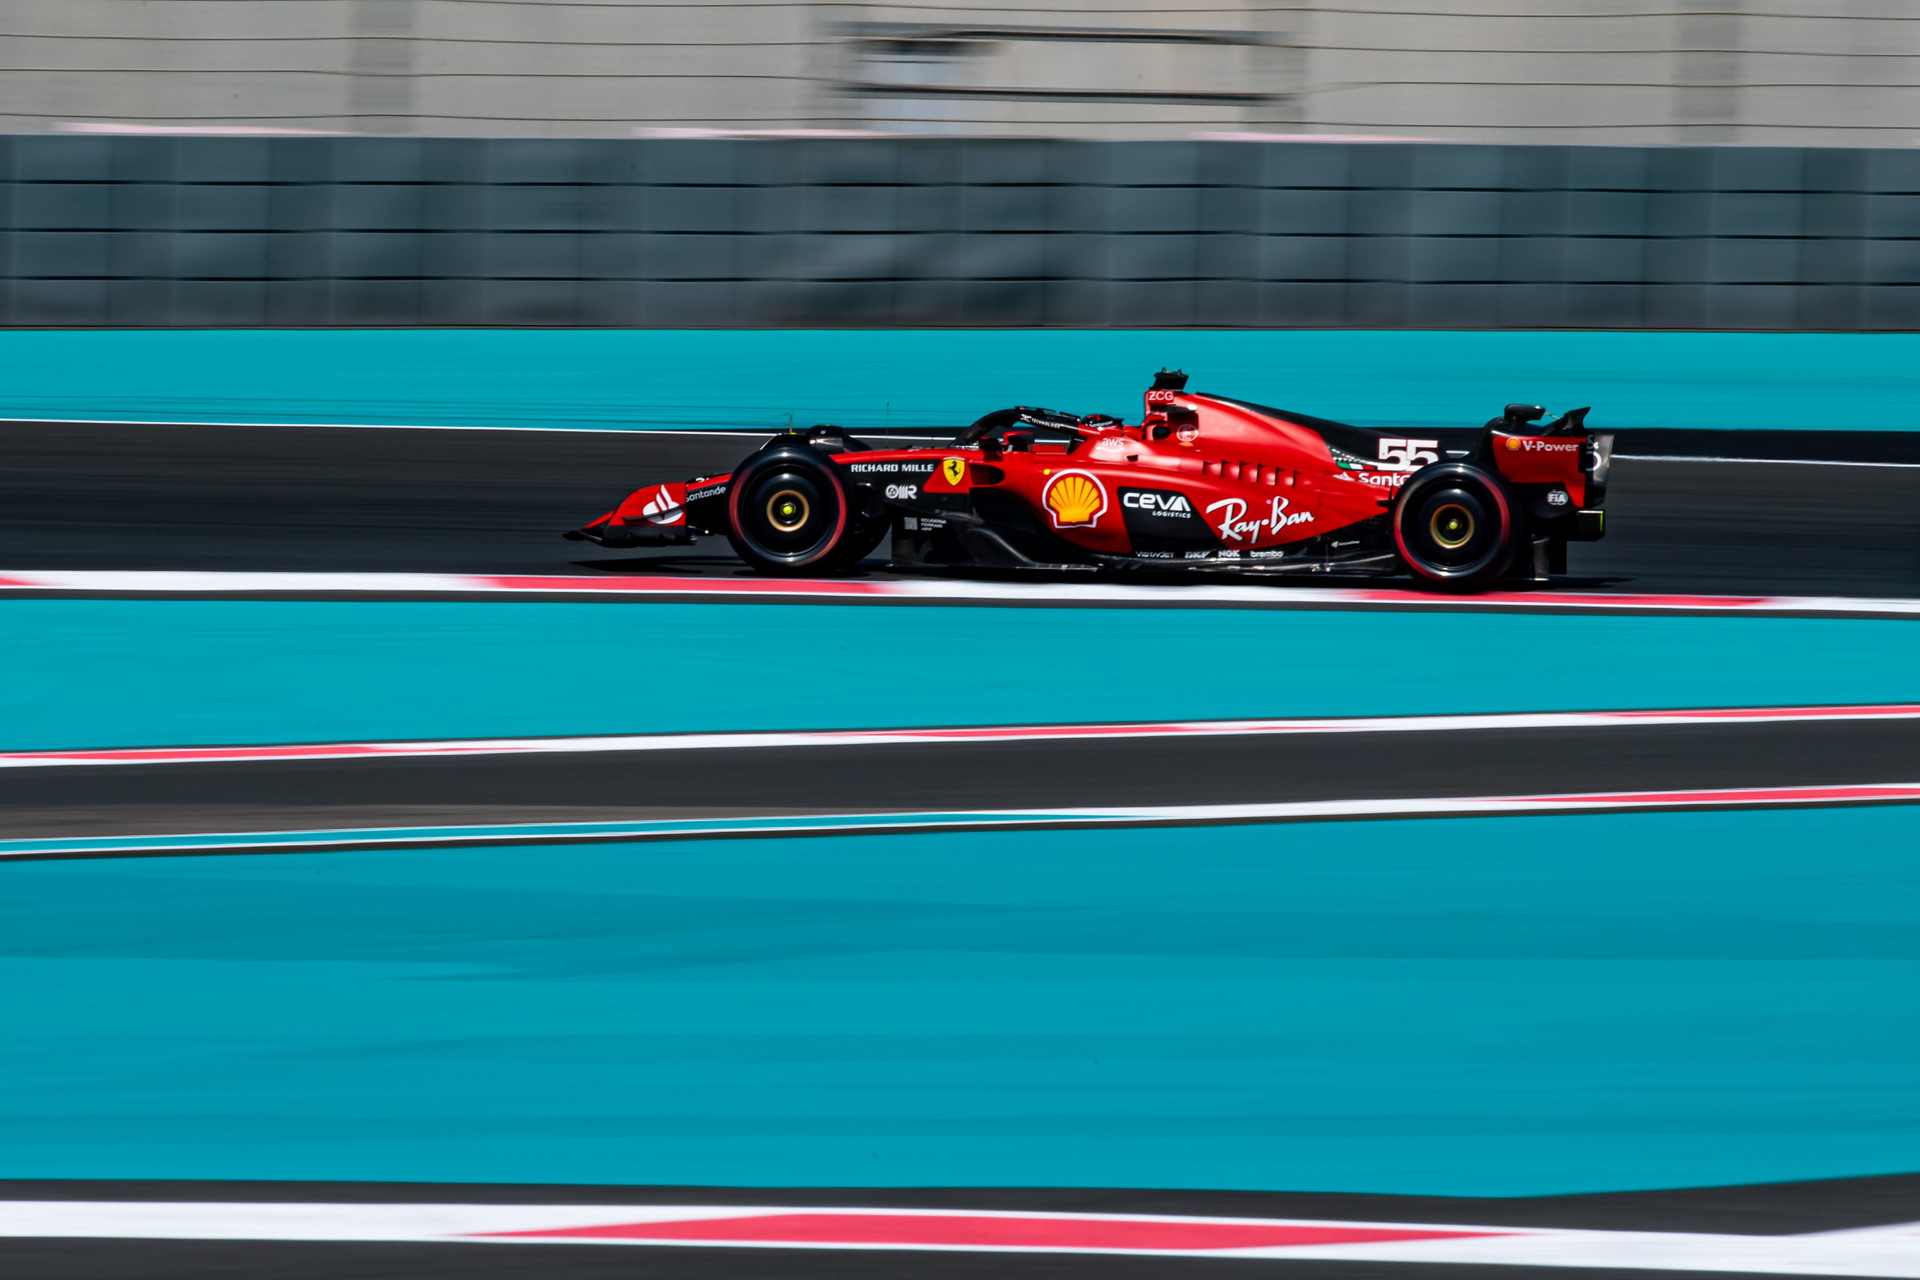 Sainz lidera manhã de testes da F1 em Abu Dhabi. Drugovich anota quarto tempo